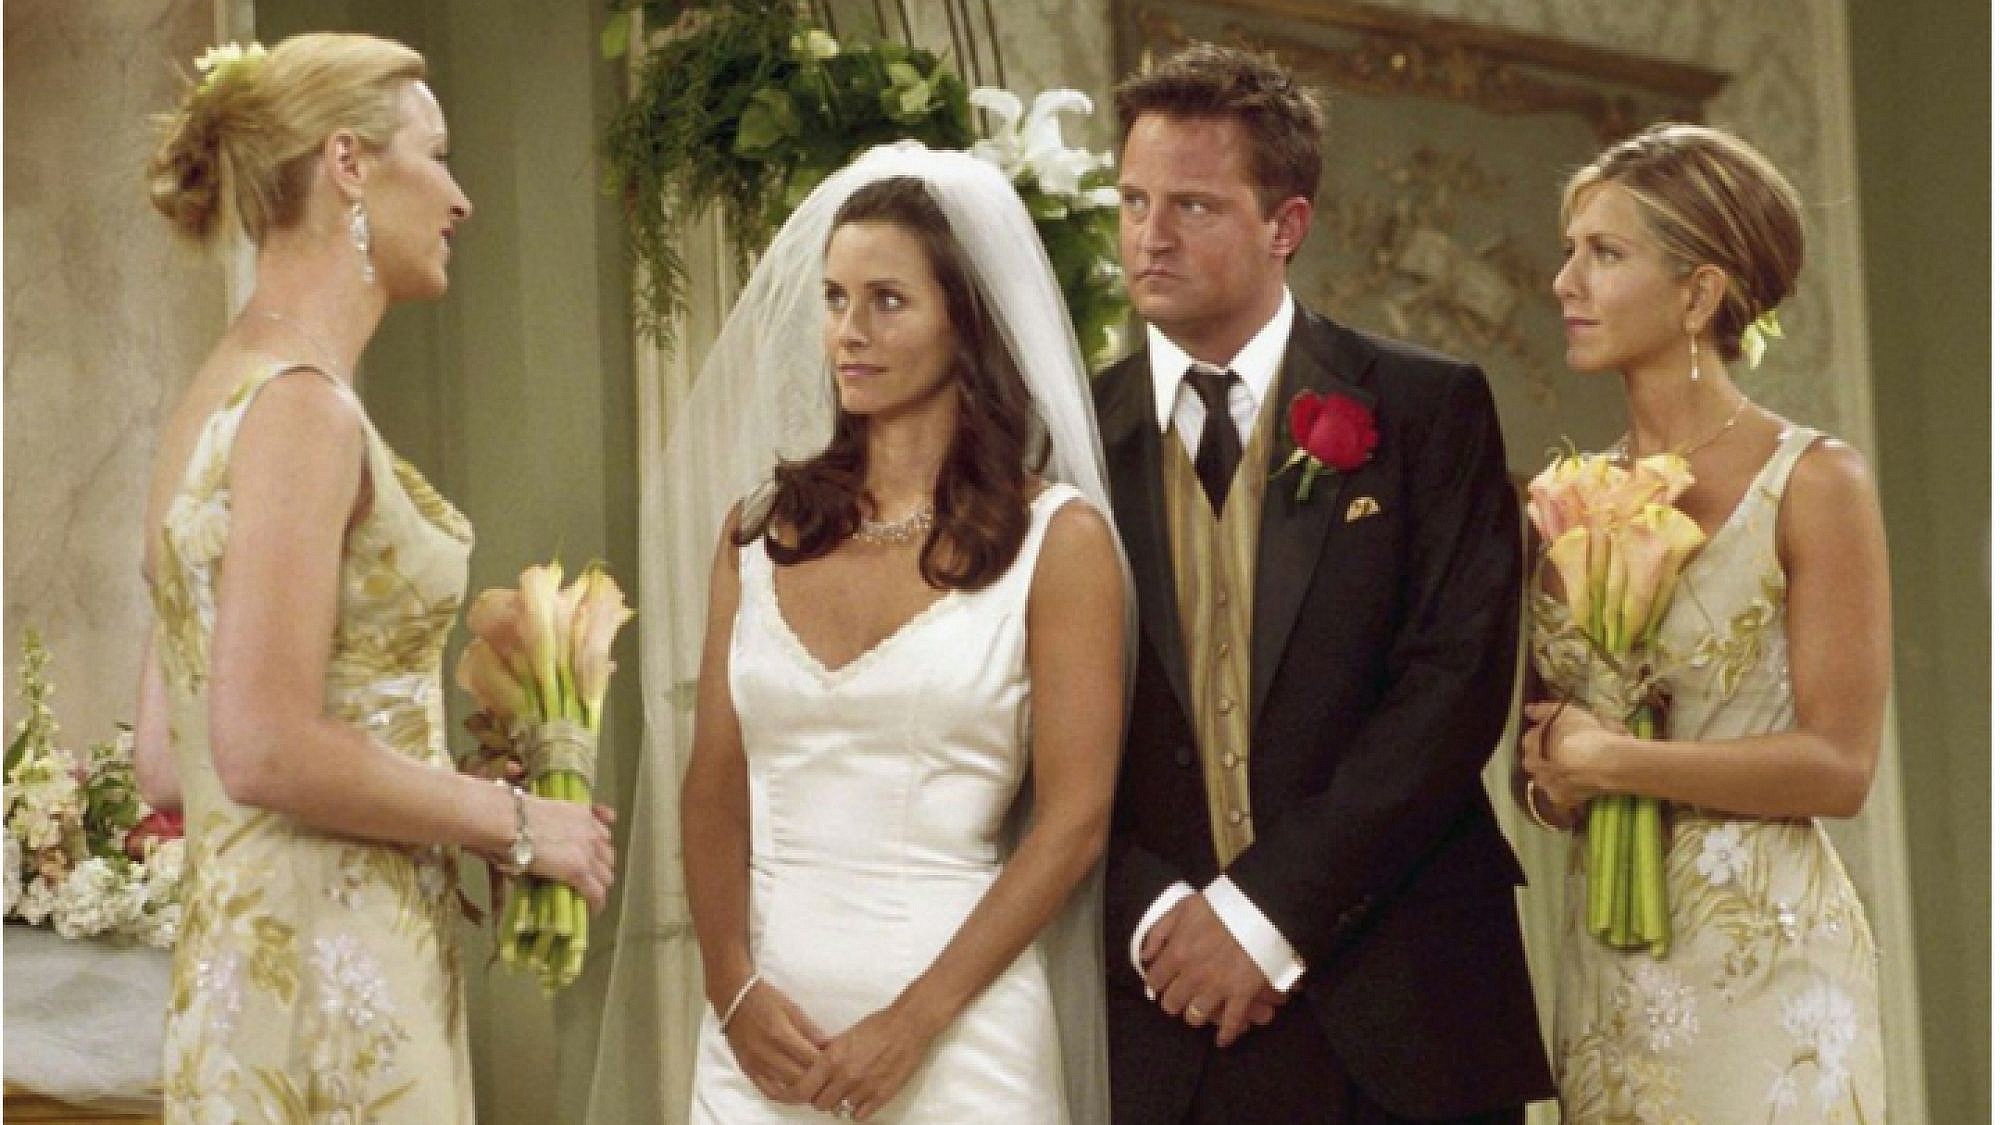 החתונה של מוניקה וצ'נדלר בסדרה "חברים" | צילום מסך מתוך הסדרה "חברים"